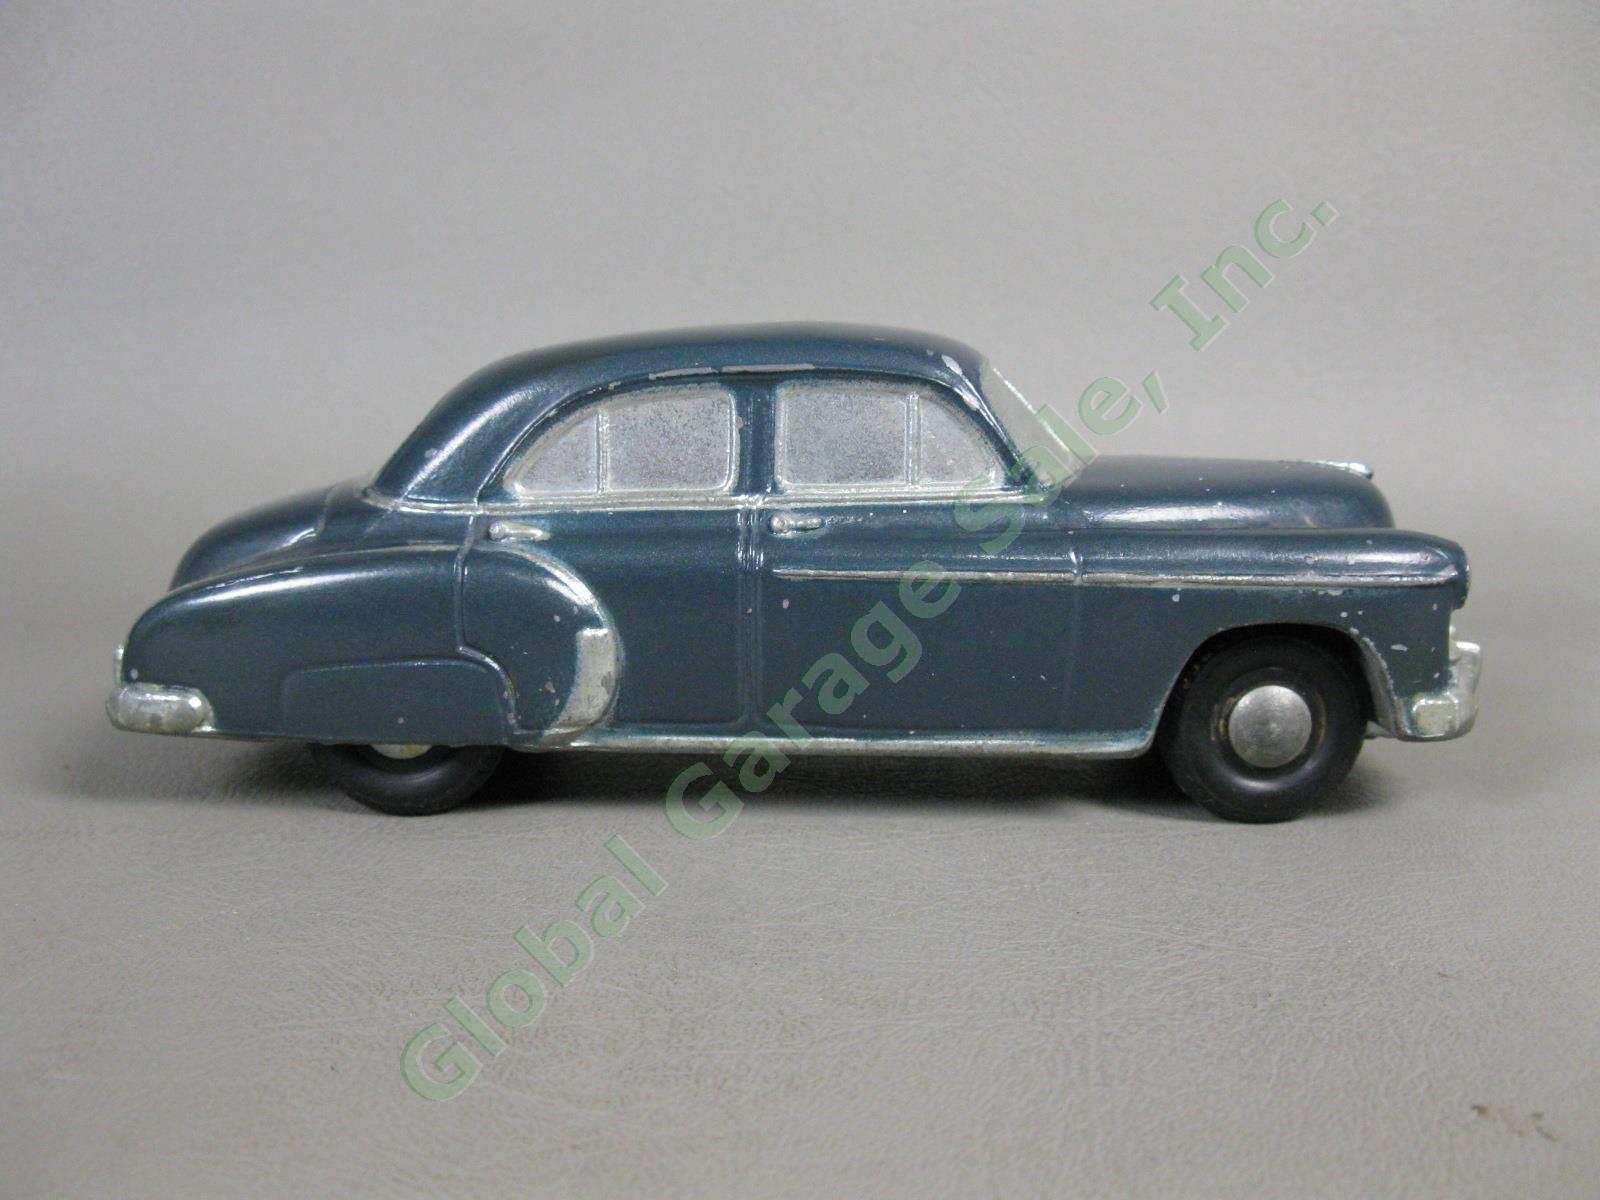 1950 Chevrolet Styleline DeLuxe Windsor Blue Sedan Banthrico Dealer Promo Car NR 3